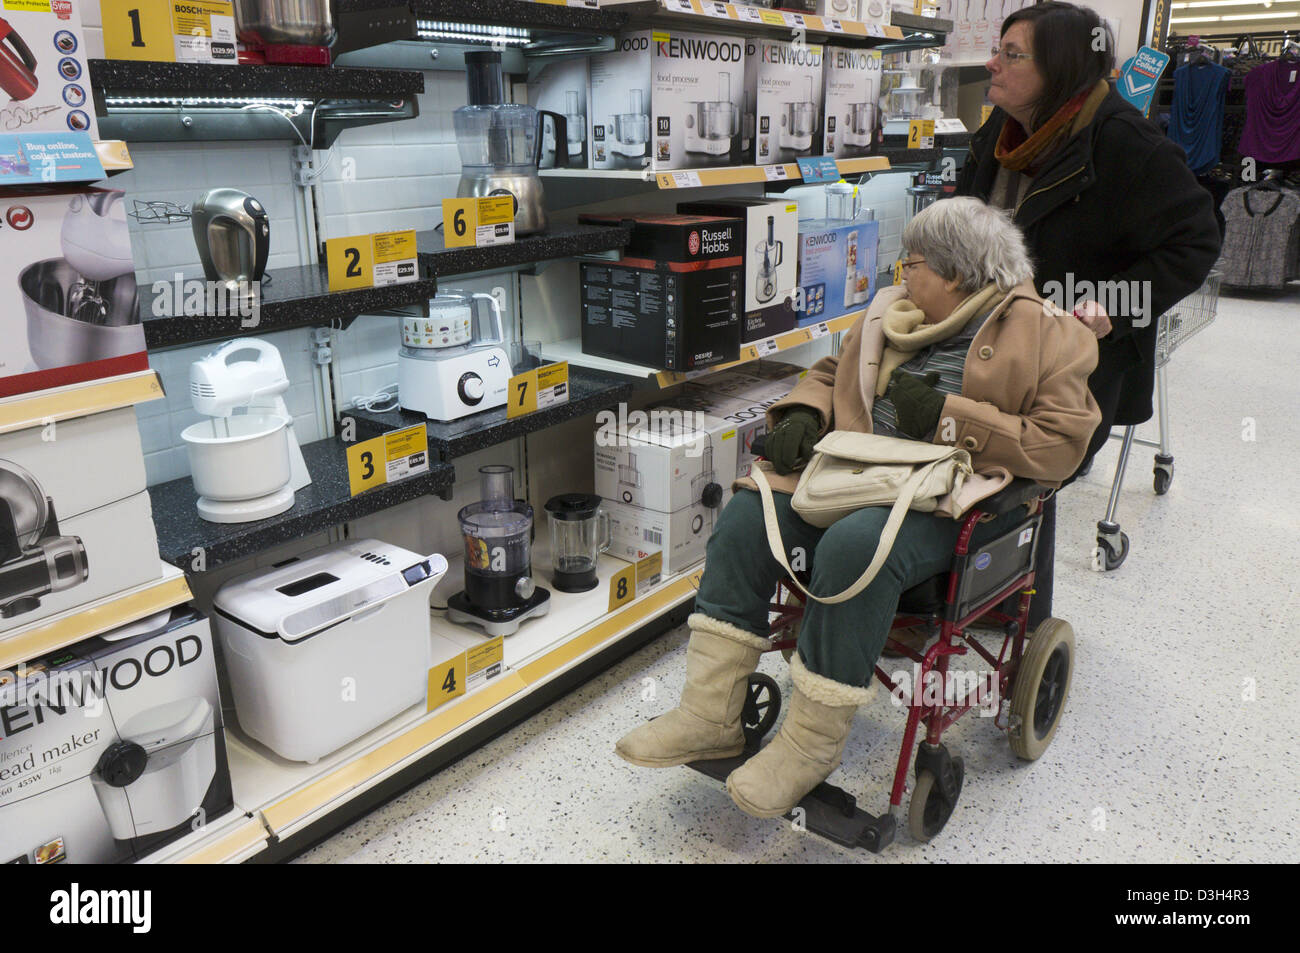 Eine ältere Dame im Rollstuhl und ihre Betreuer oder Helfer Blick auf Küchenutensilien elektrische Produkte in einem Supermarkt. Stockfoto